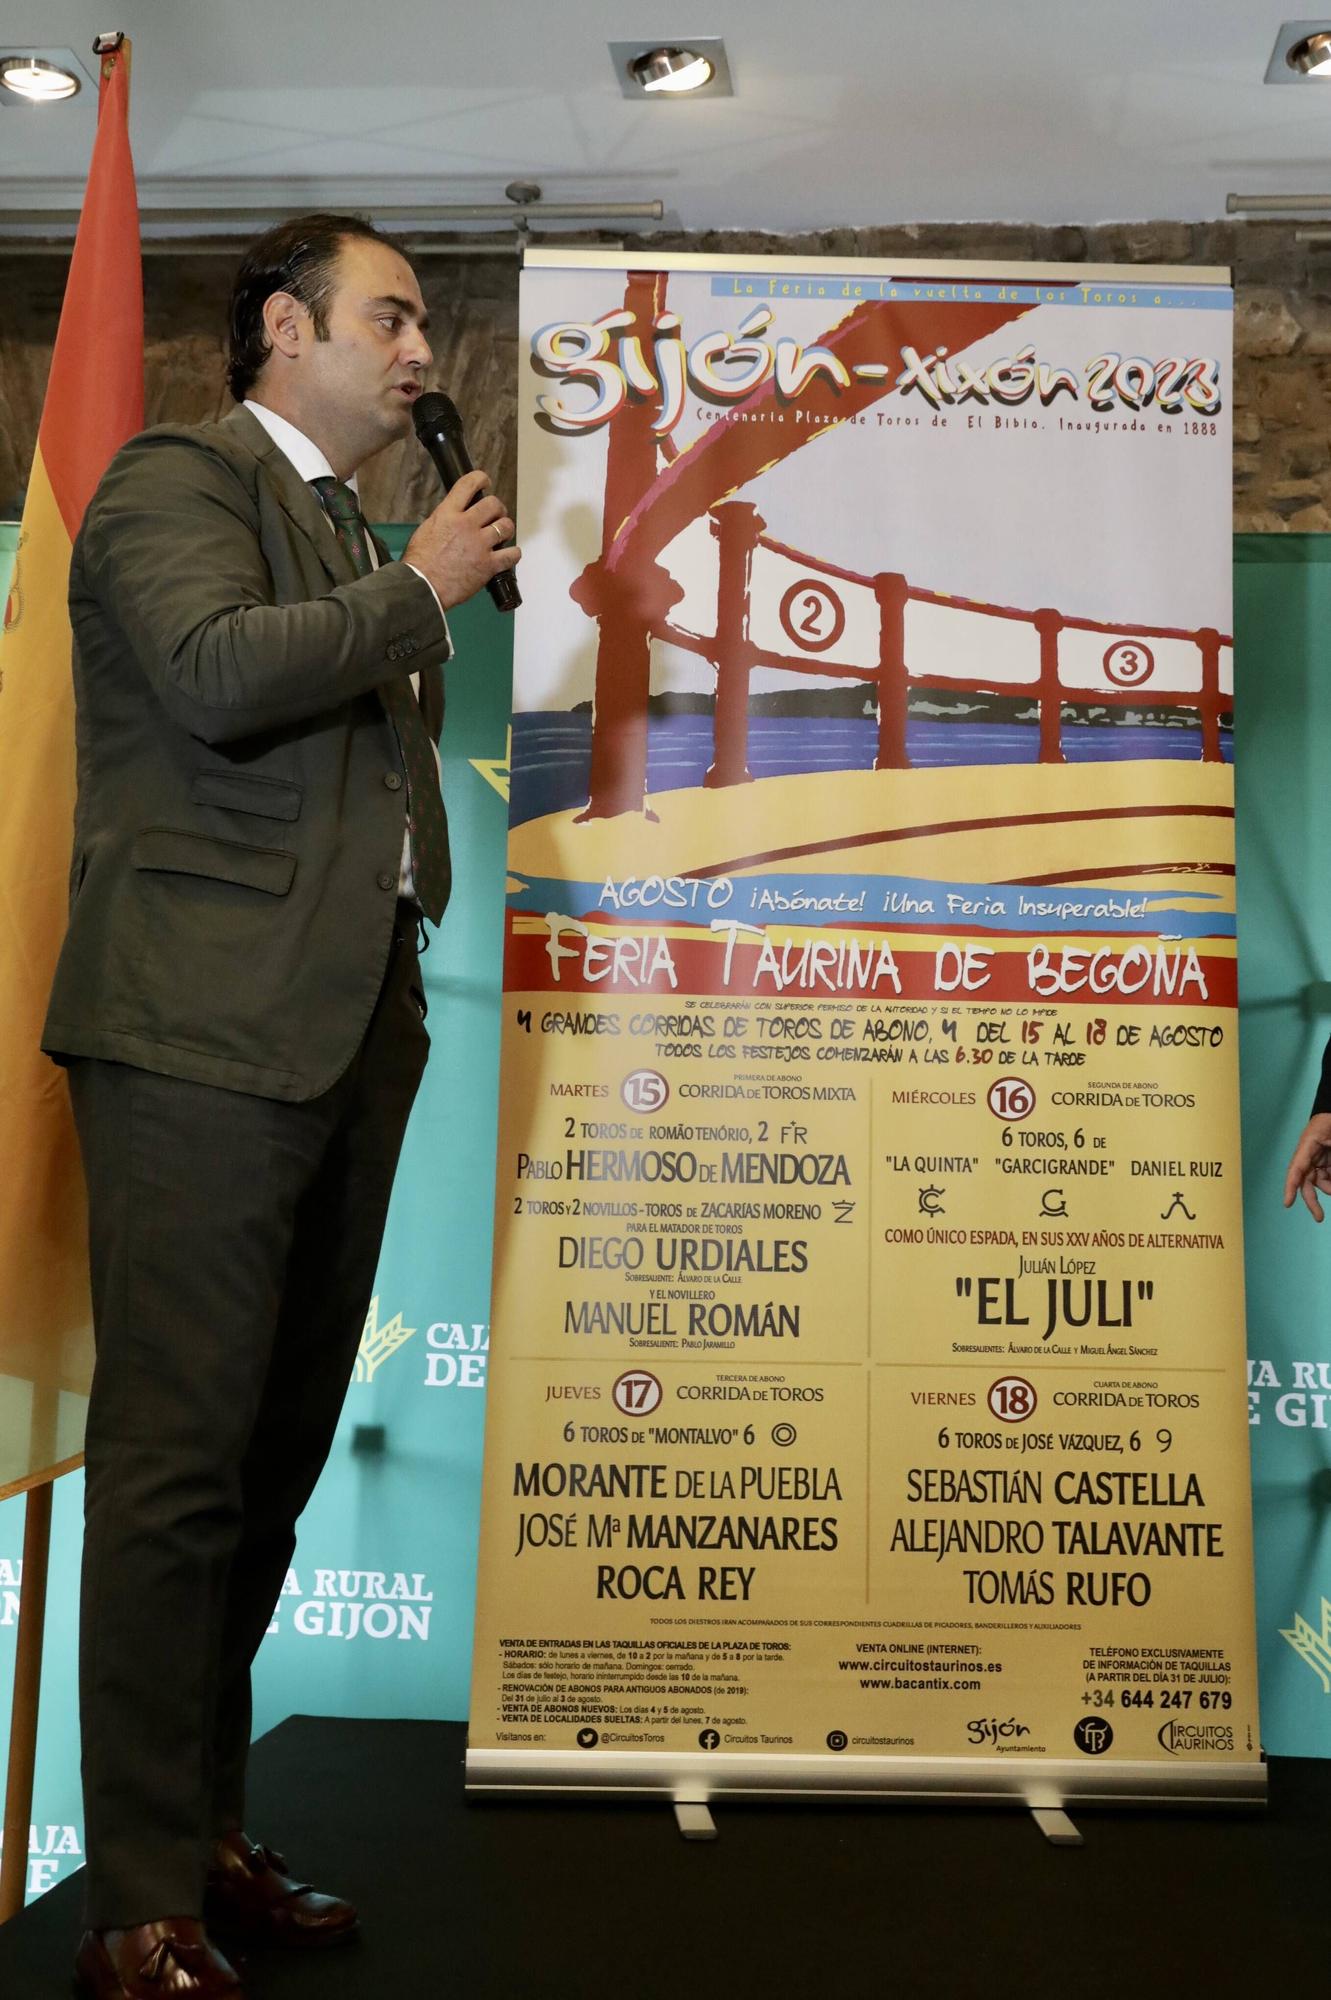 La presentación de los carteles del regreso de los toros a Gijón, en imágenes